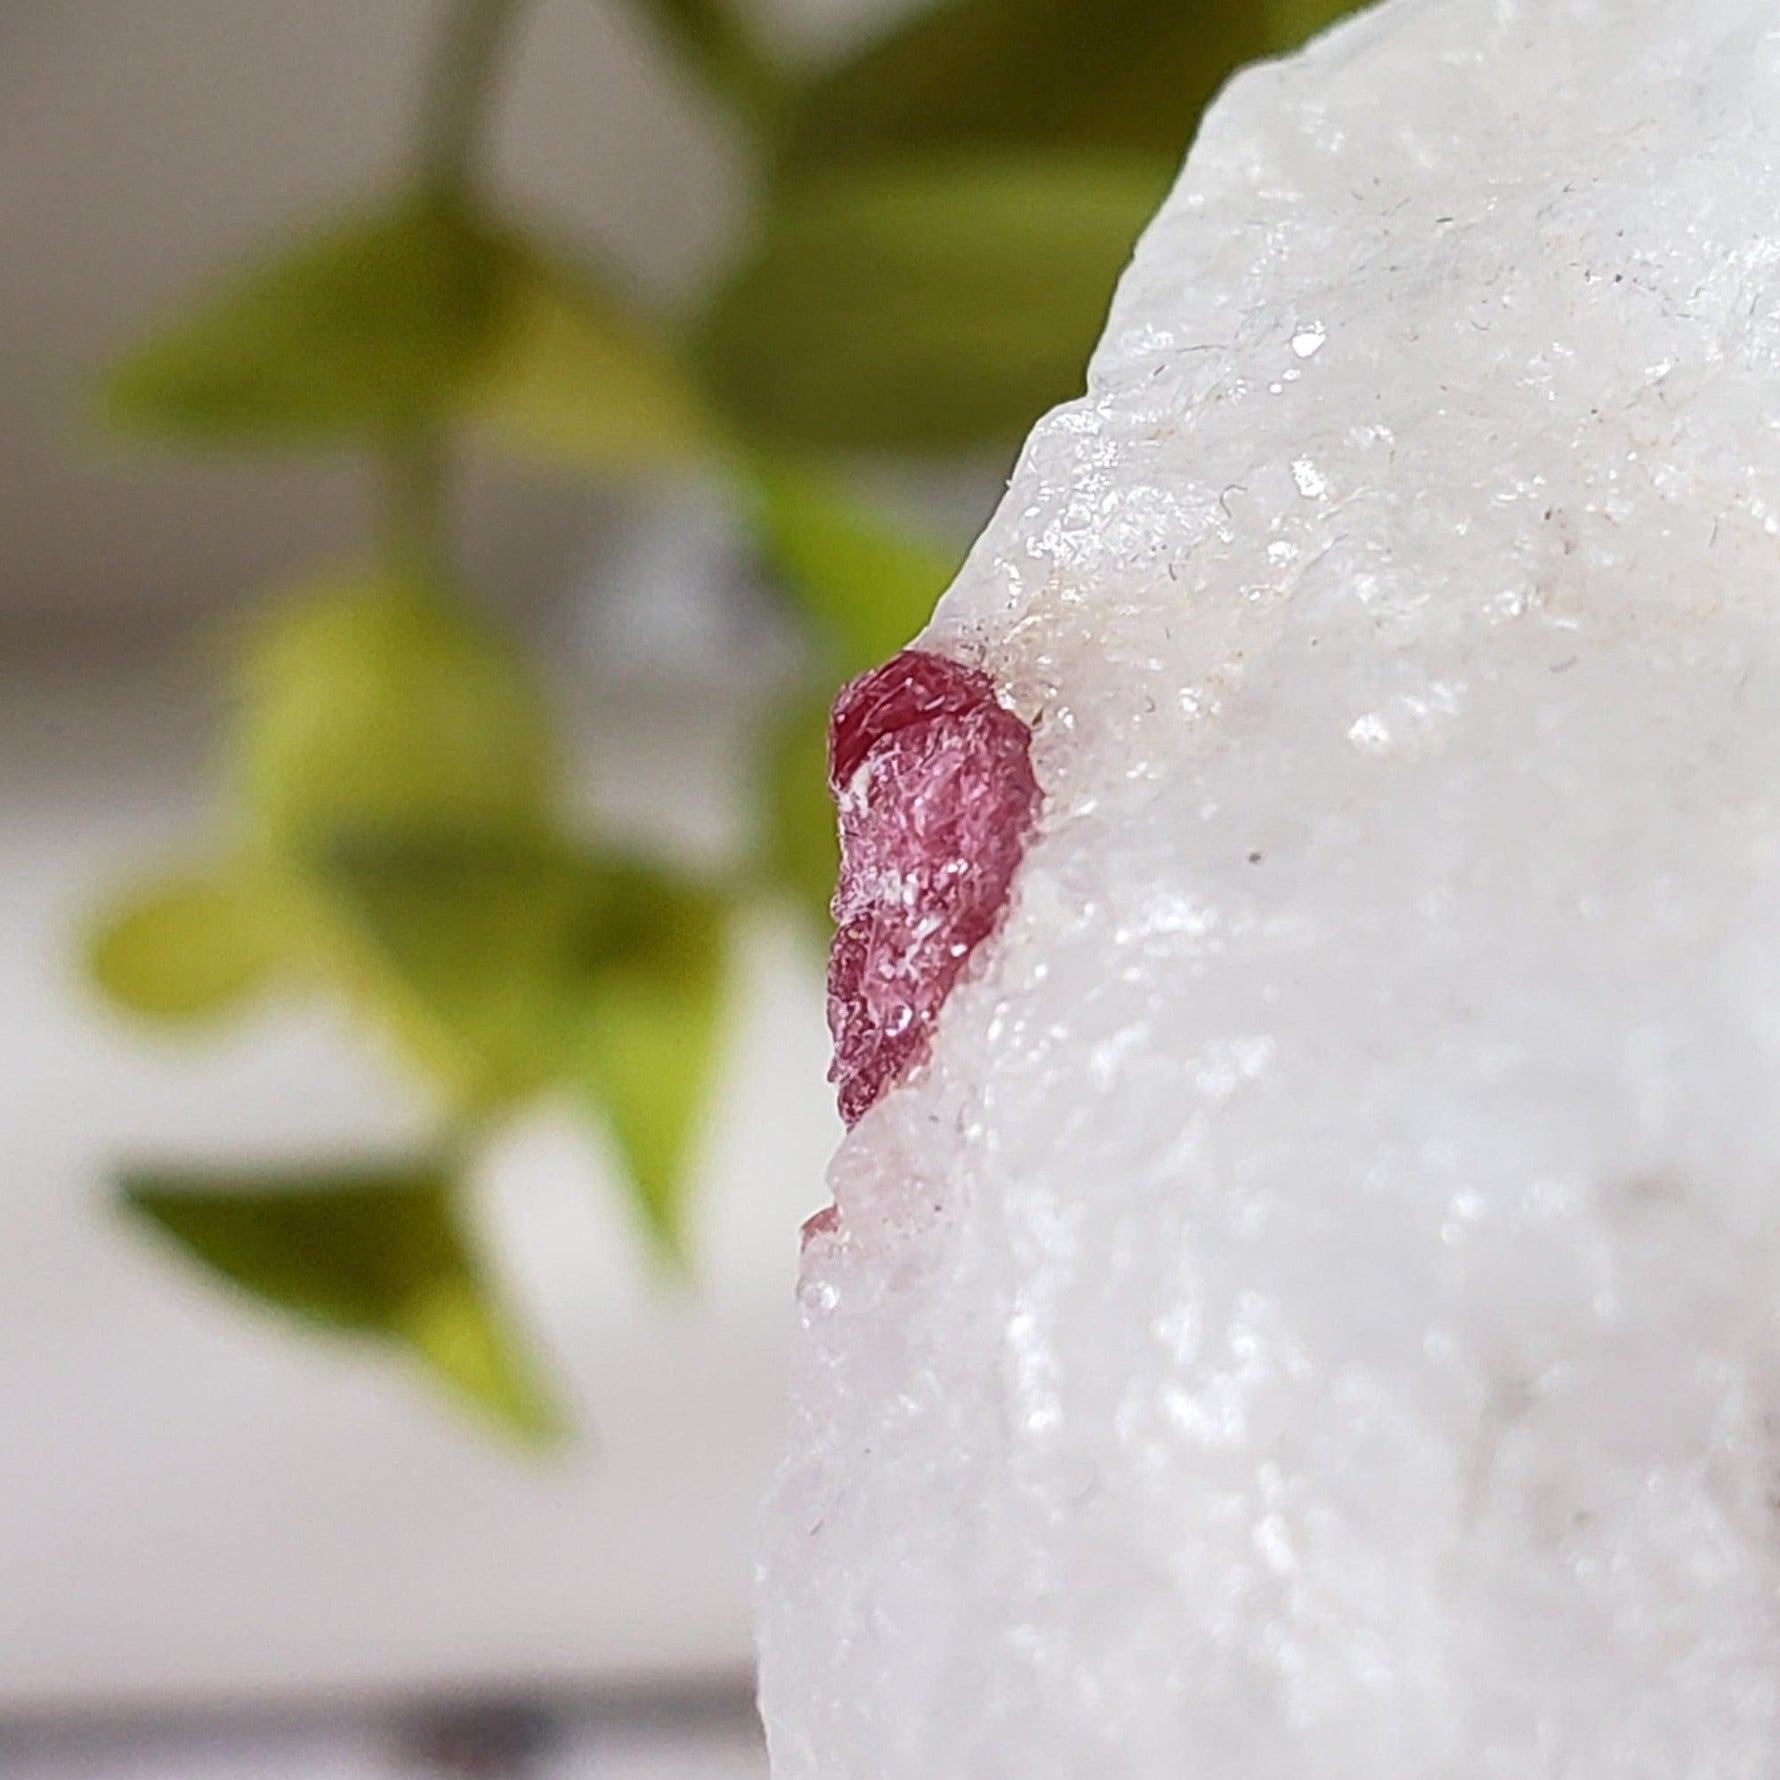 Spinel Crystal in Marble Host | Red Spinel | 35.8 gr, 179 ct | Mogok, Myanmar